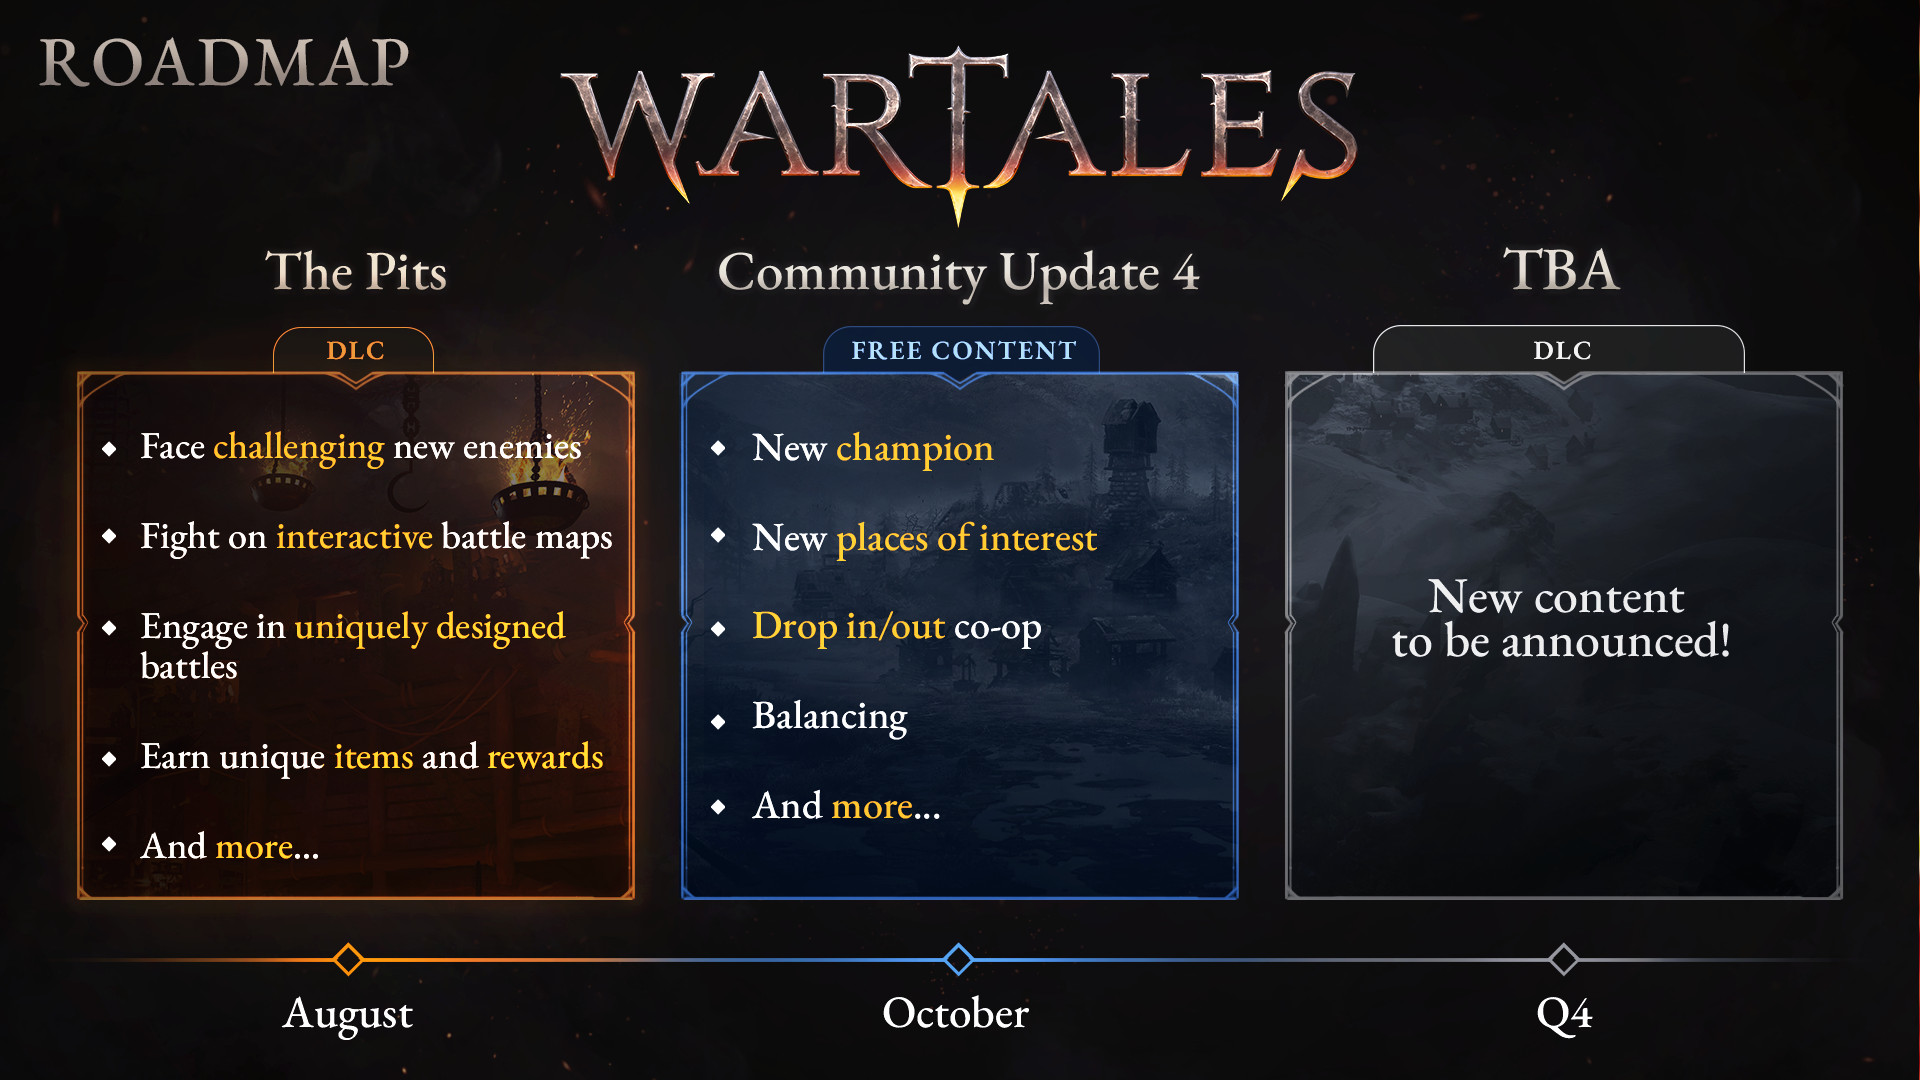 Wartales Yol Haritası - Ağustos ayında The Pits DLC'si yayınlanırken, Ekim ayında ücretsiz Community Update 4 yayınlanacak.